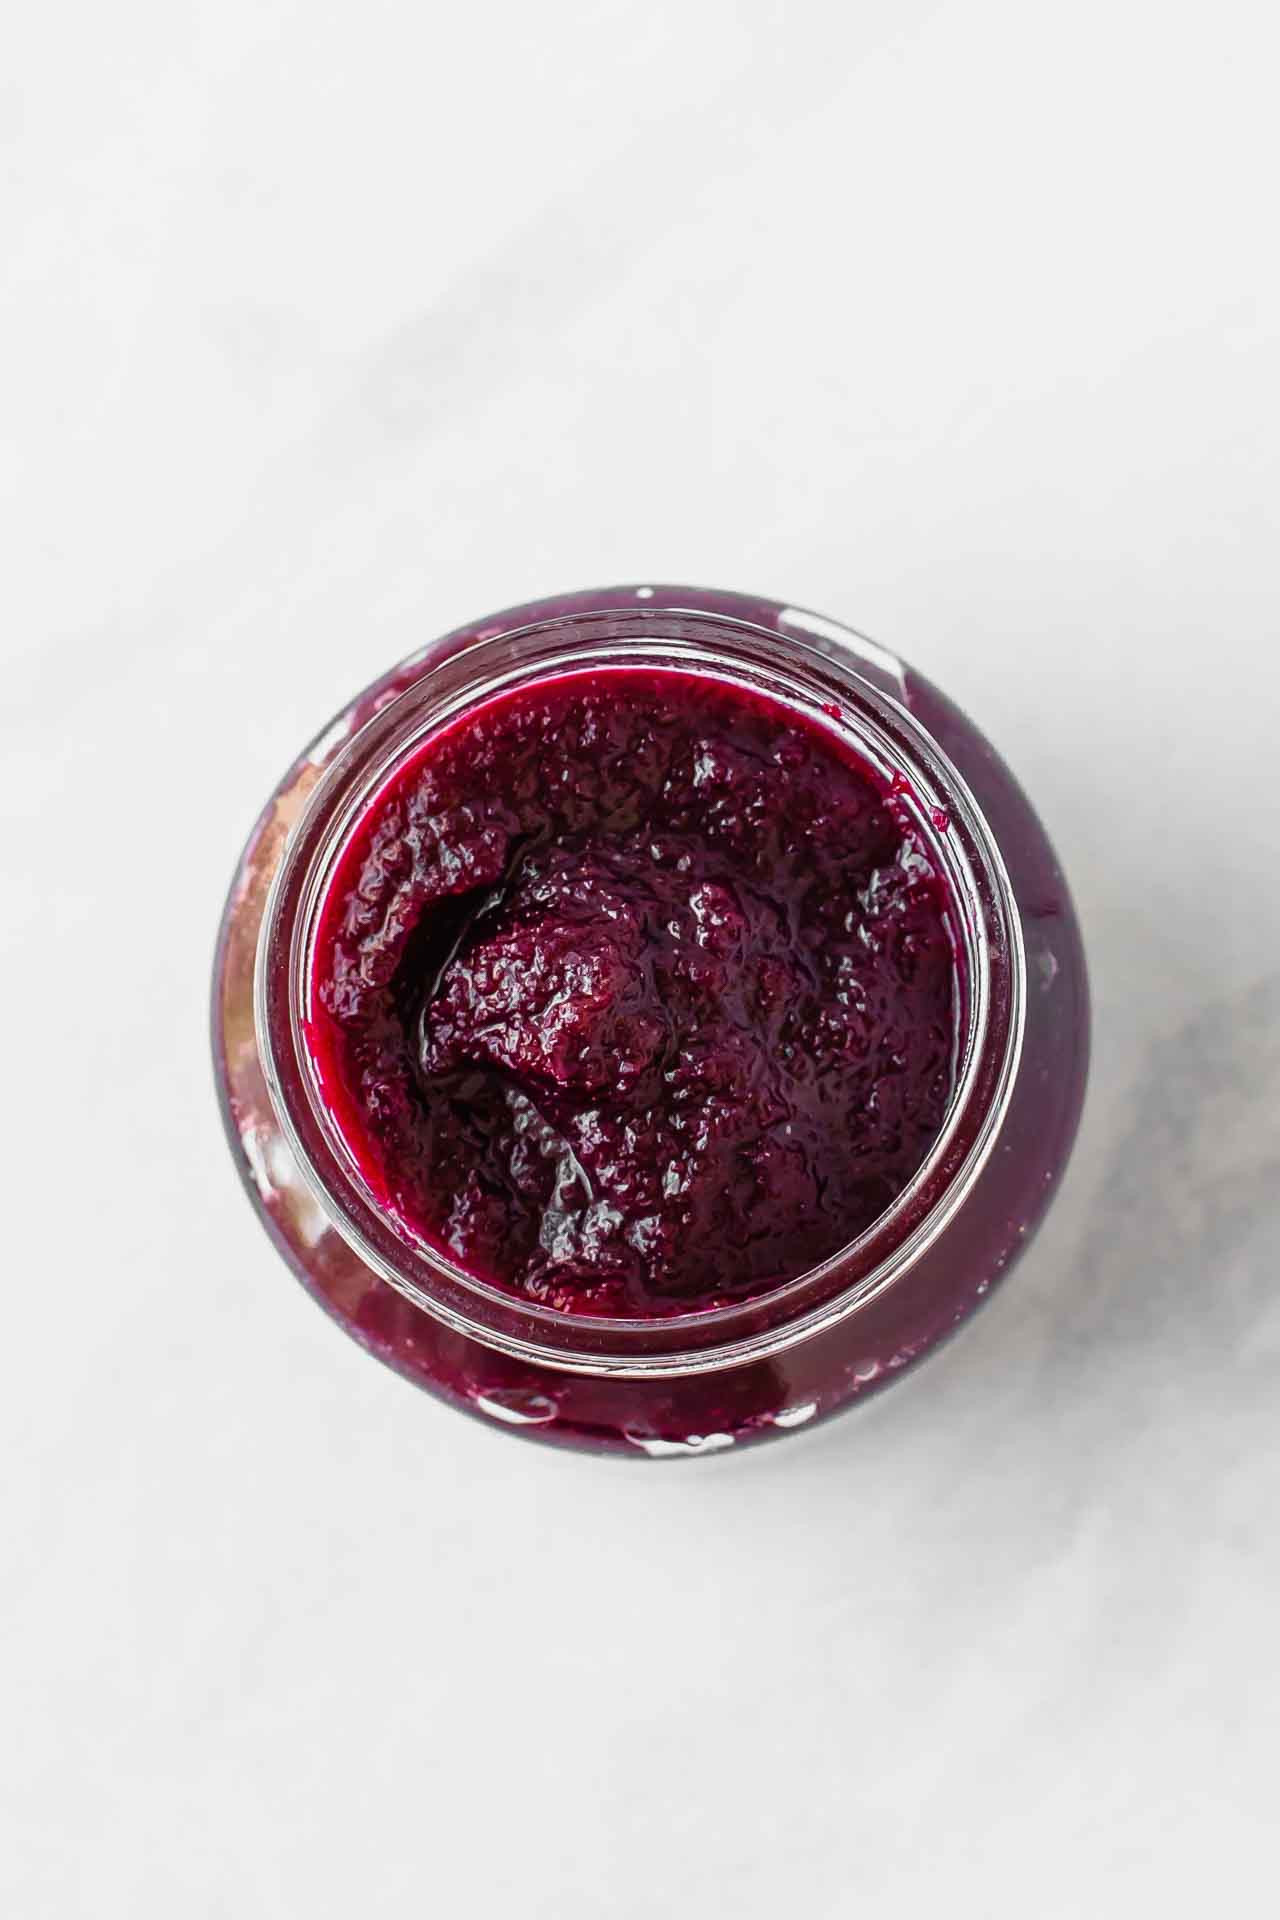 Blueberry Baby Food Recipe
 Beets & Blueberries Baby Food Recipe Jar Lemons